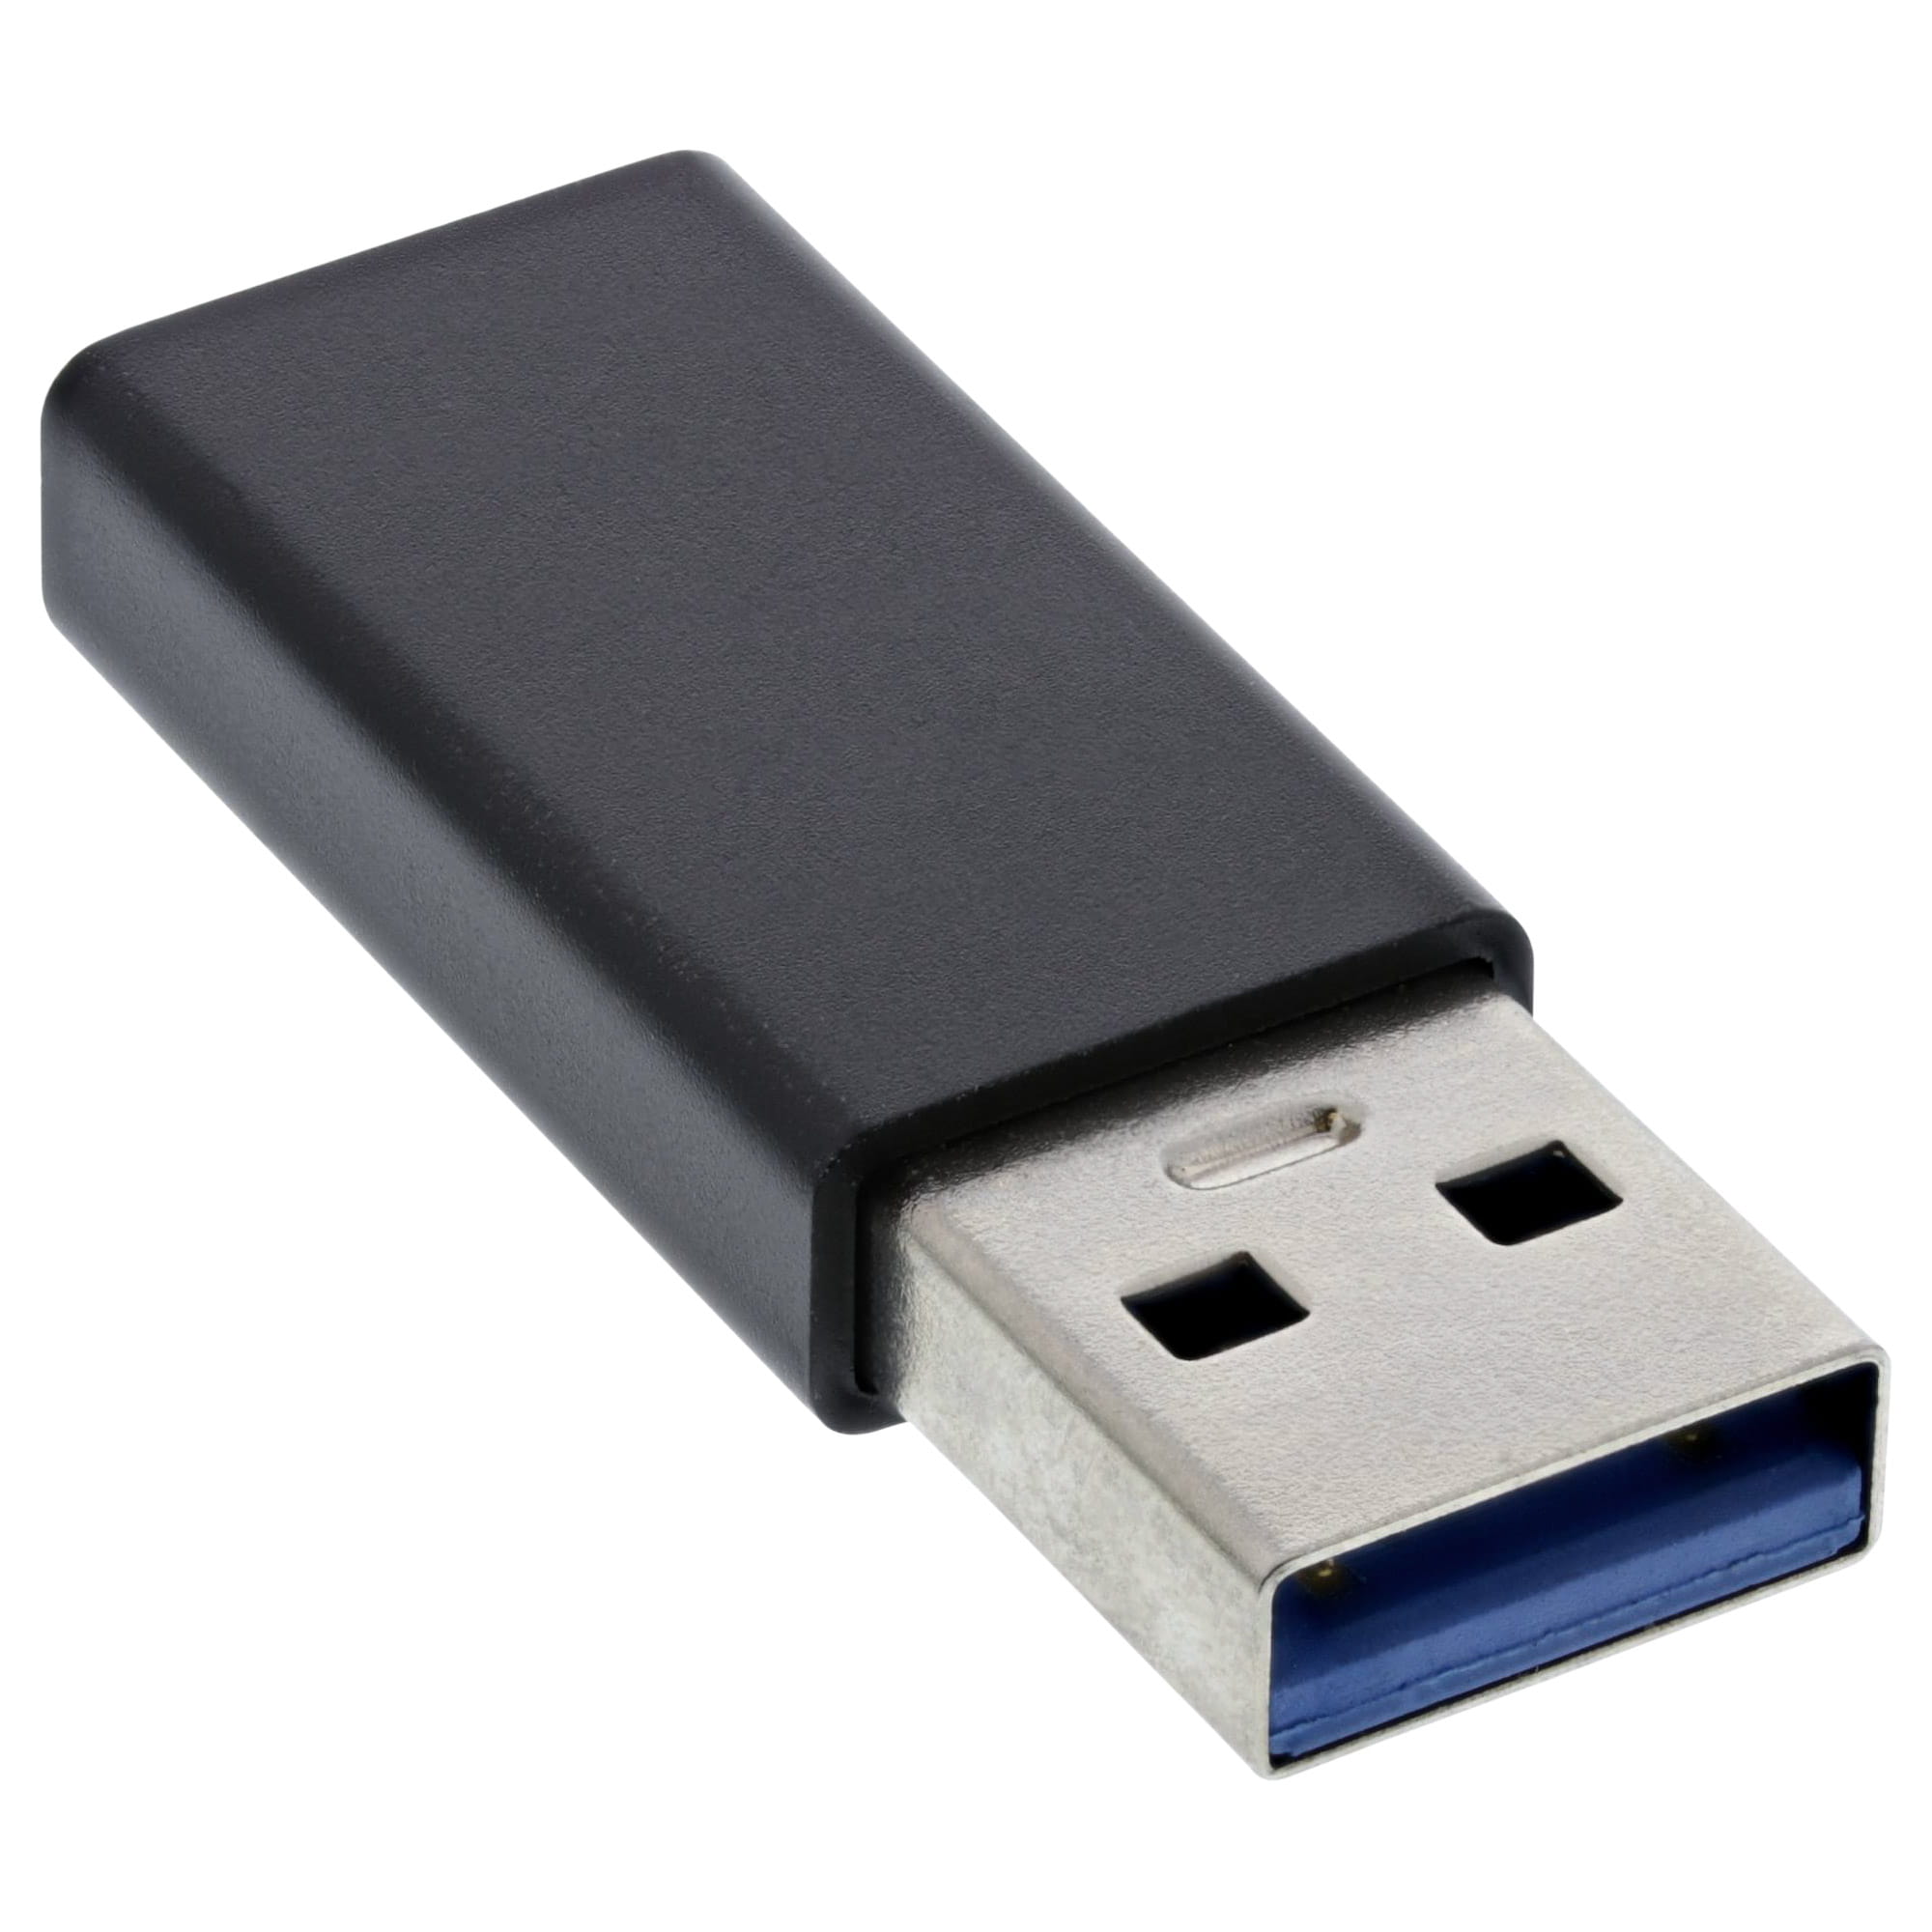 InLine USB 3.2 Gen.2 Adapter - USB-A Stecker auf USB-C Buchse